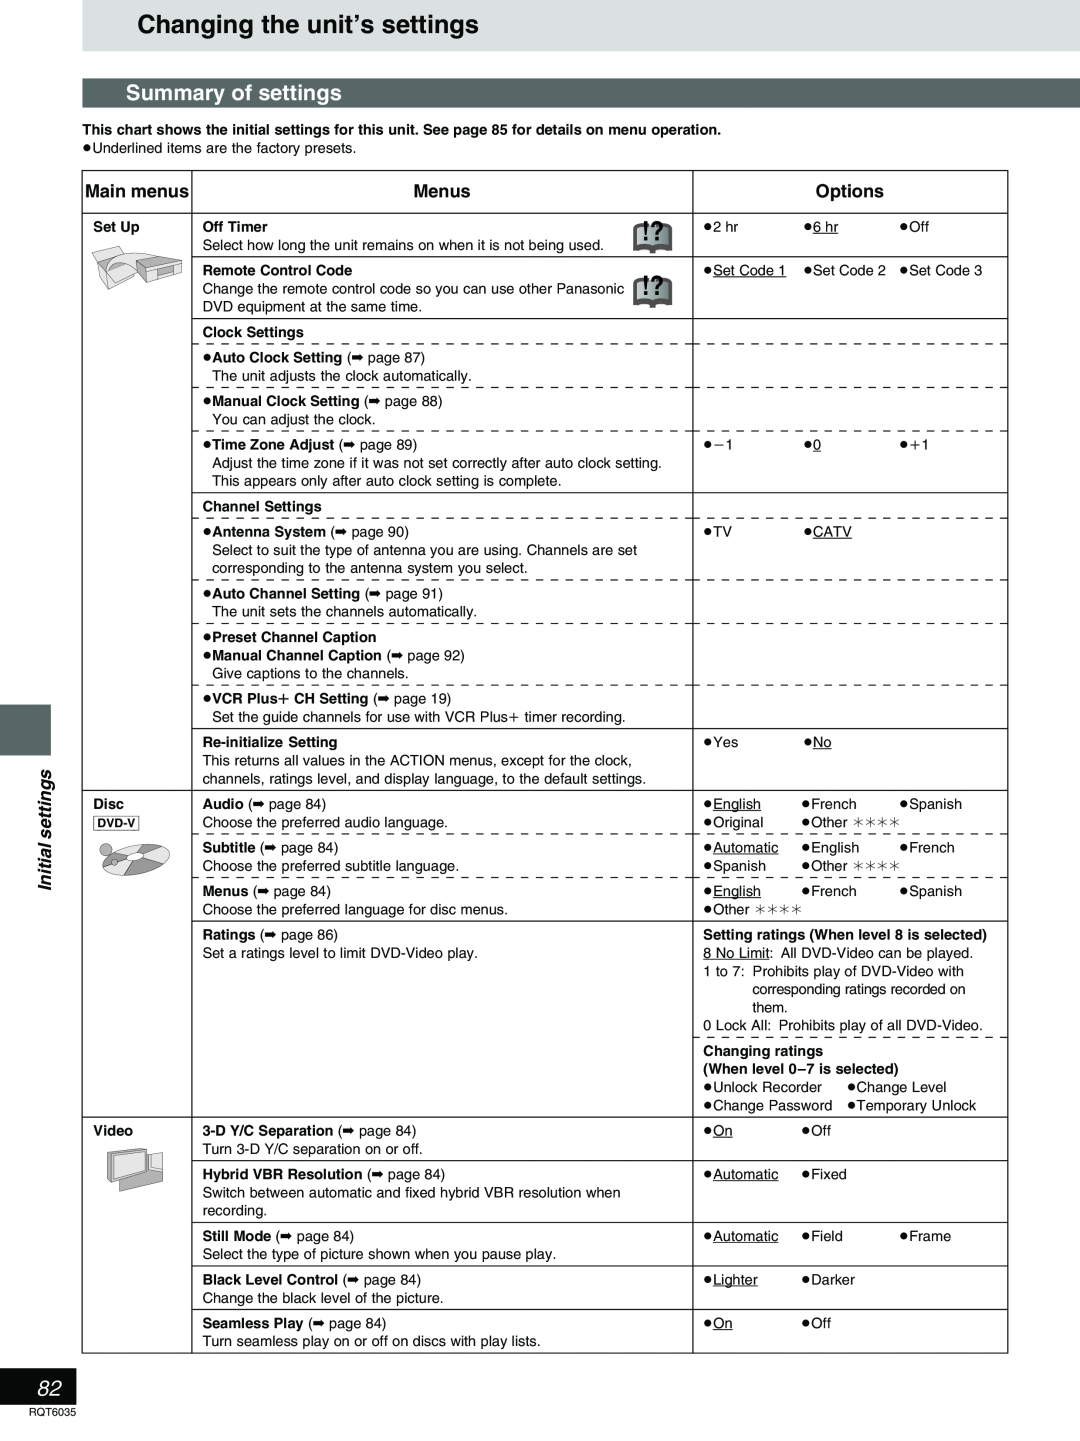 Panasonic DMR-E20 warranty Changing the unit’s settings, Summary of settings, Initial settings, Main menus, Menus, Options 